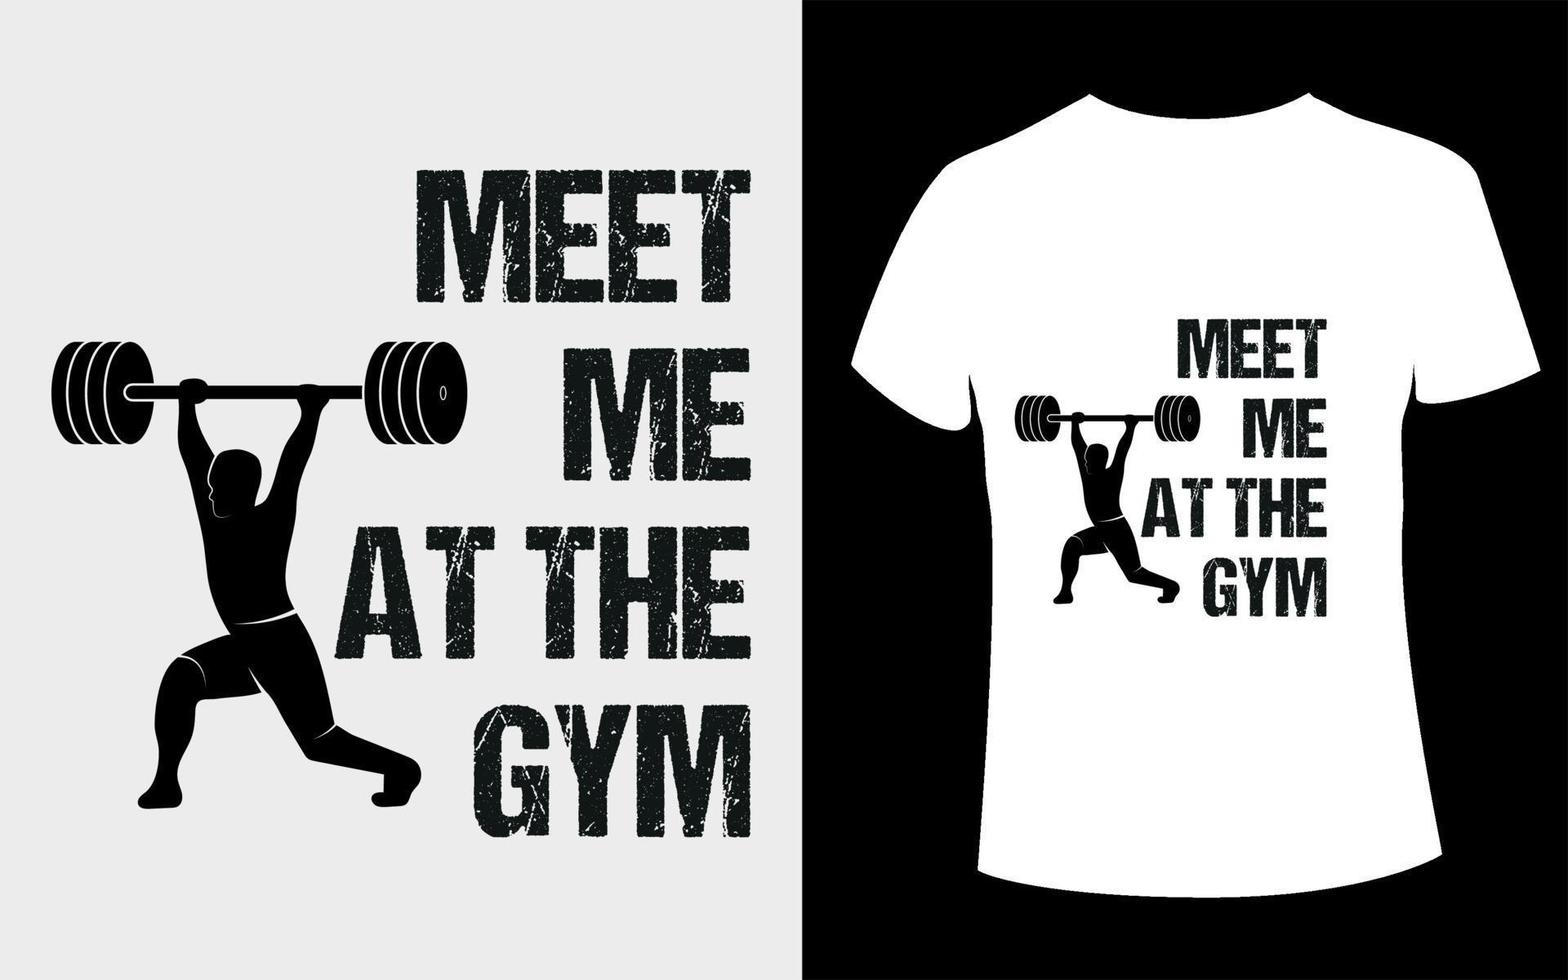 t-shirtdesign eller träffa mig på gymmet typografi t-shirtdesign med redigerbar vektor